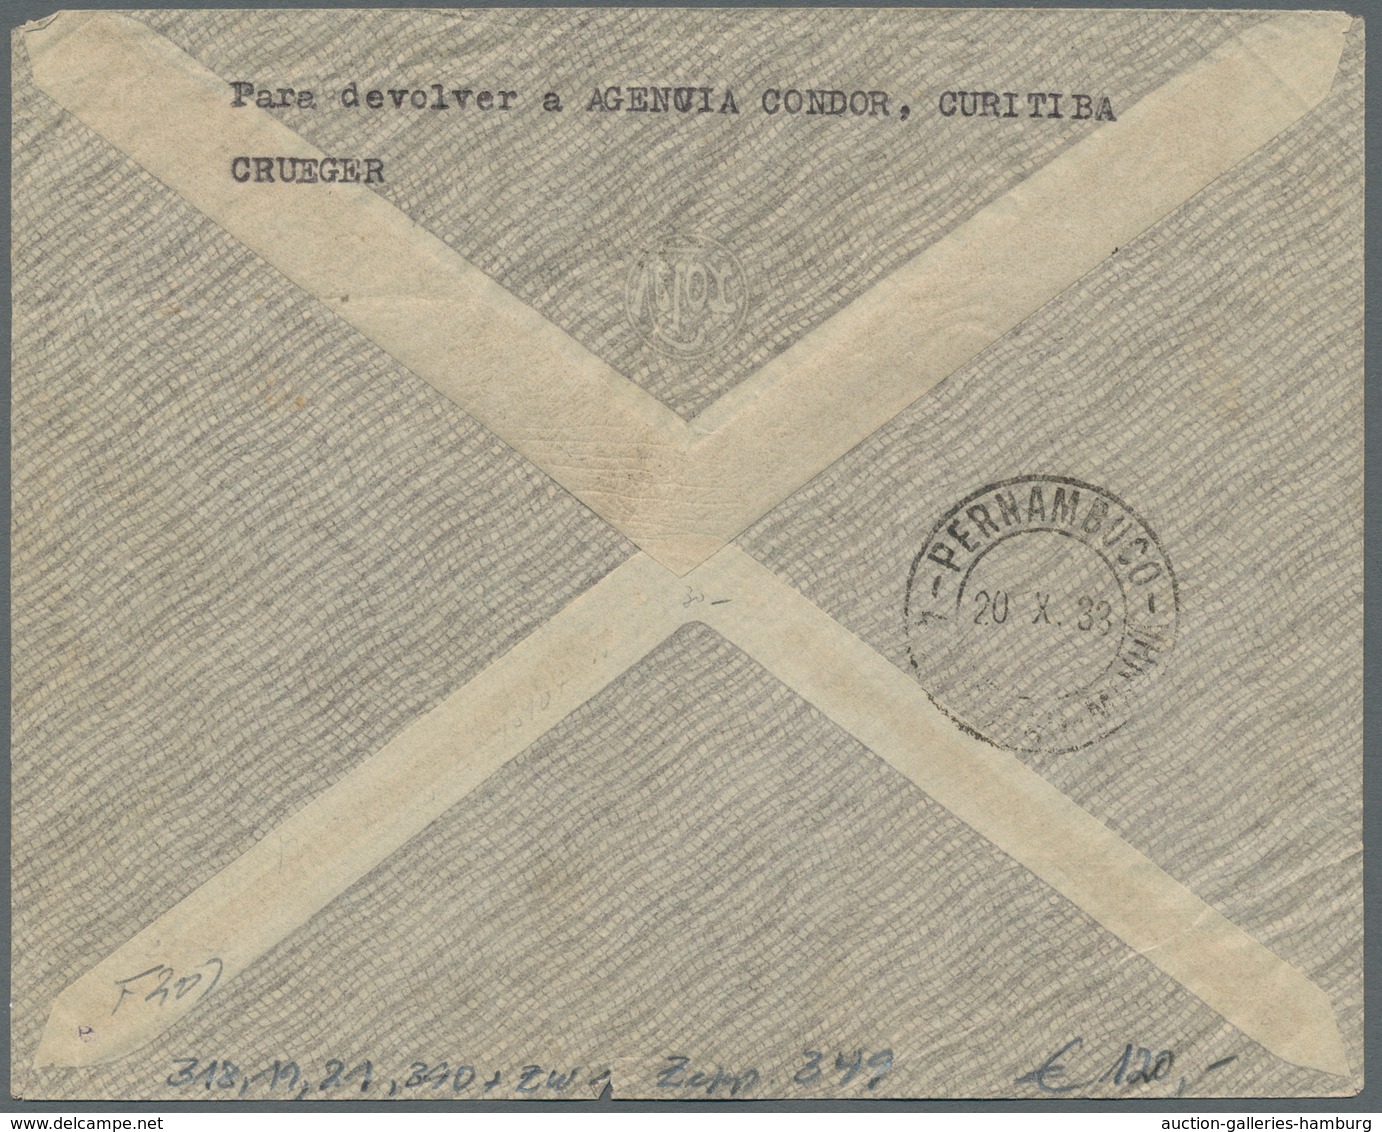 Zeppelinpost Übersee: 1931-1934, Partie von 4 Zeppelinpostbriefen mit brasilianischer Frankatur, dav